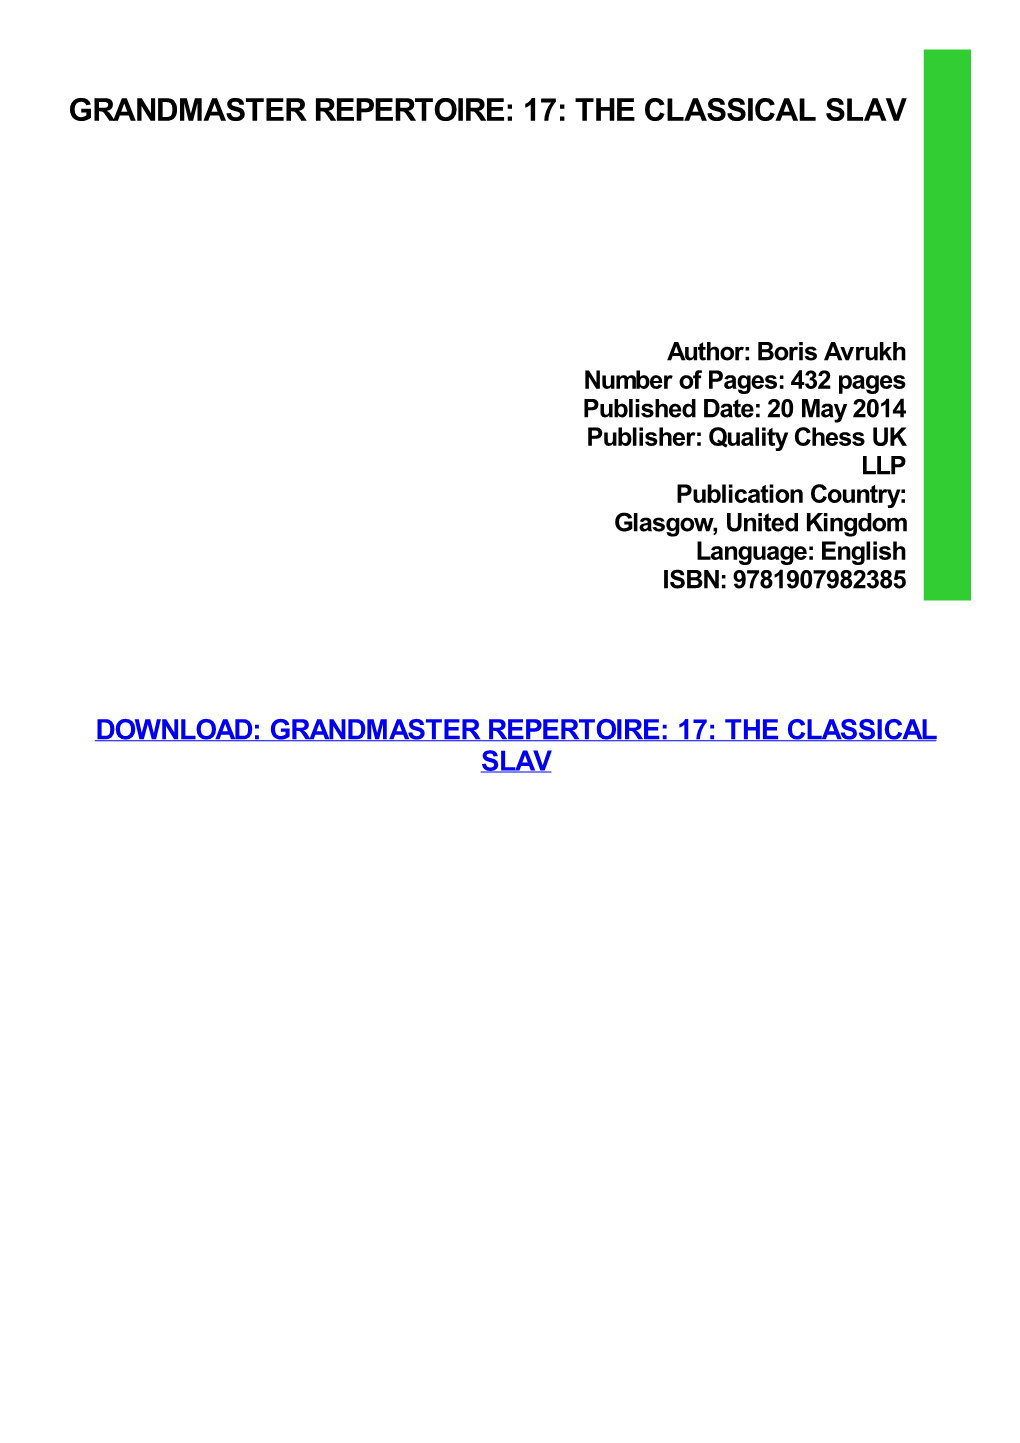 Grandmaster Repertoire: 17: the Classical Slav Download Free